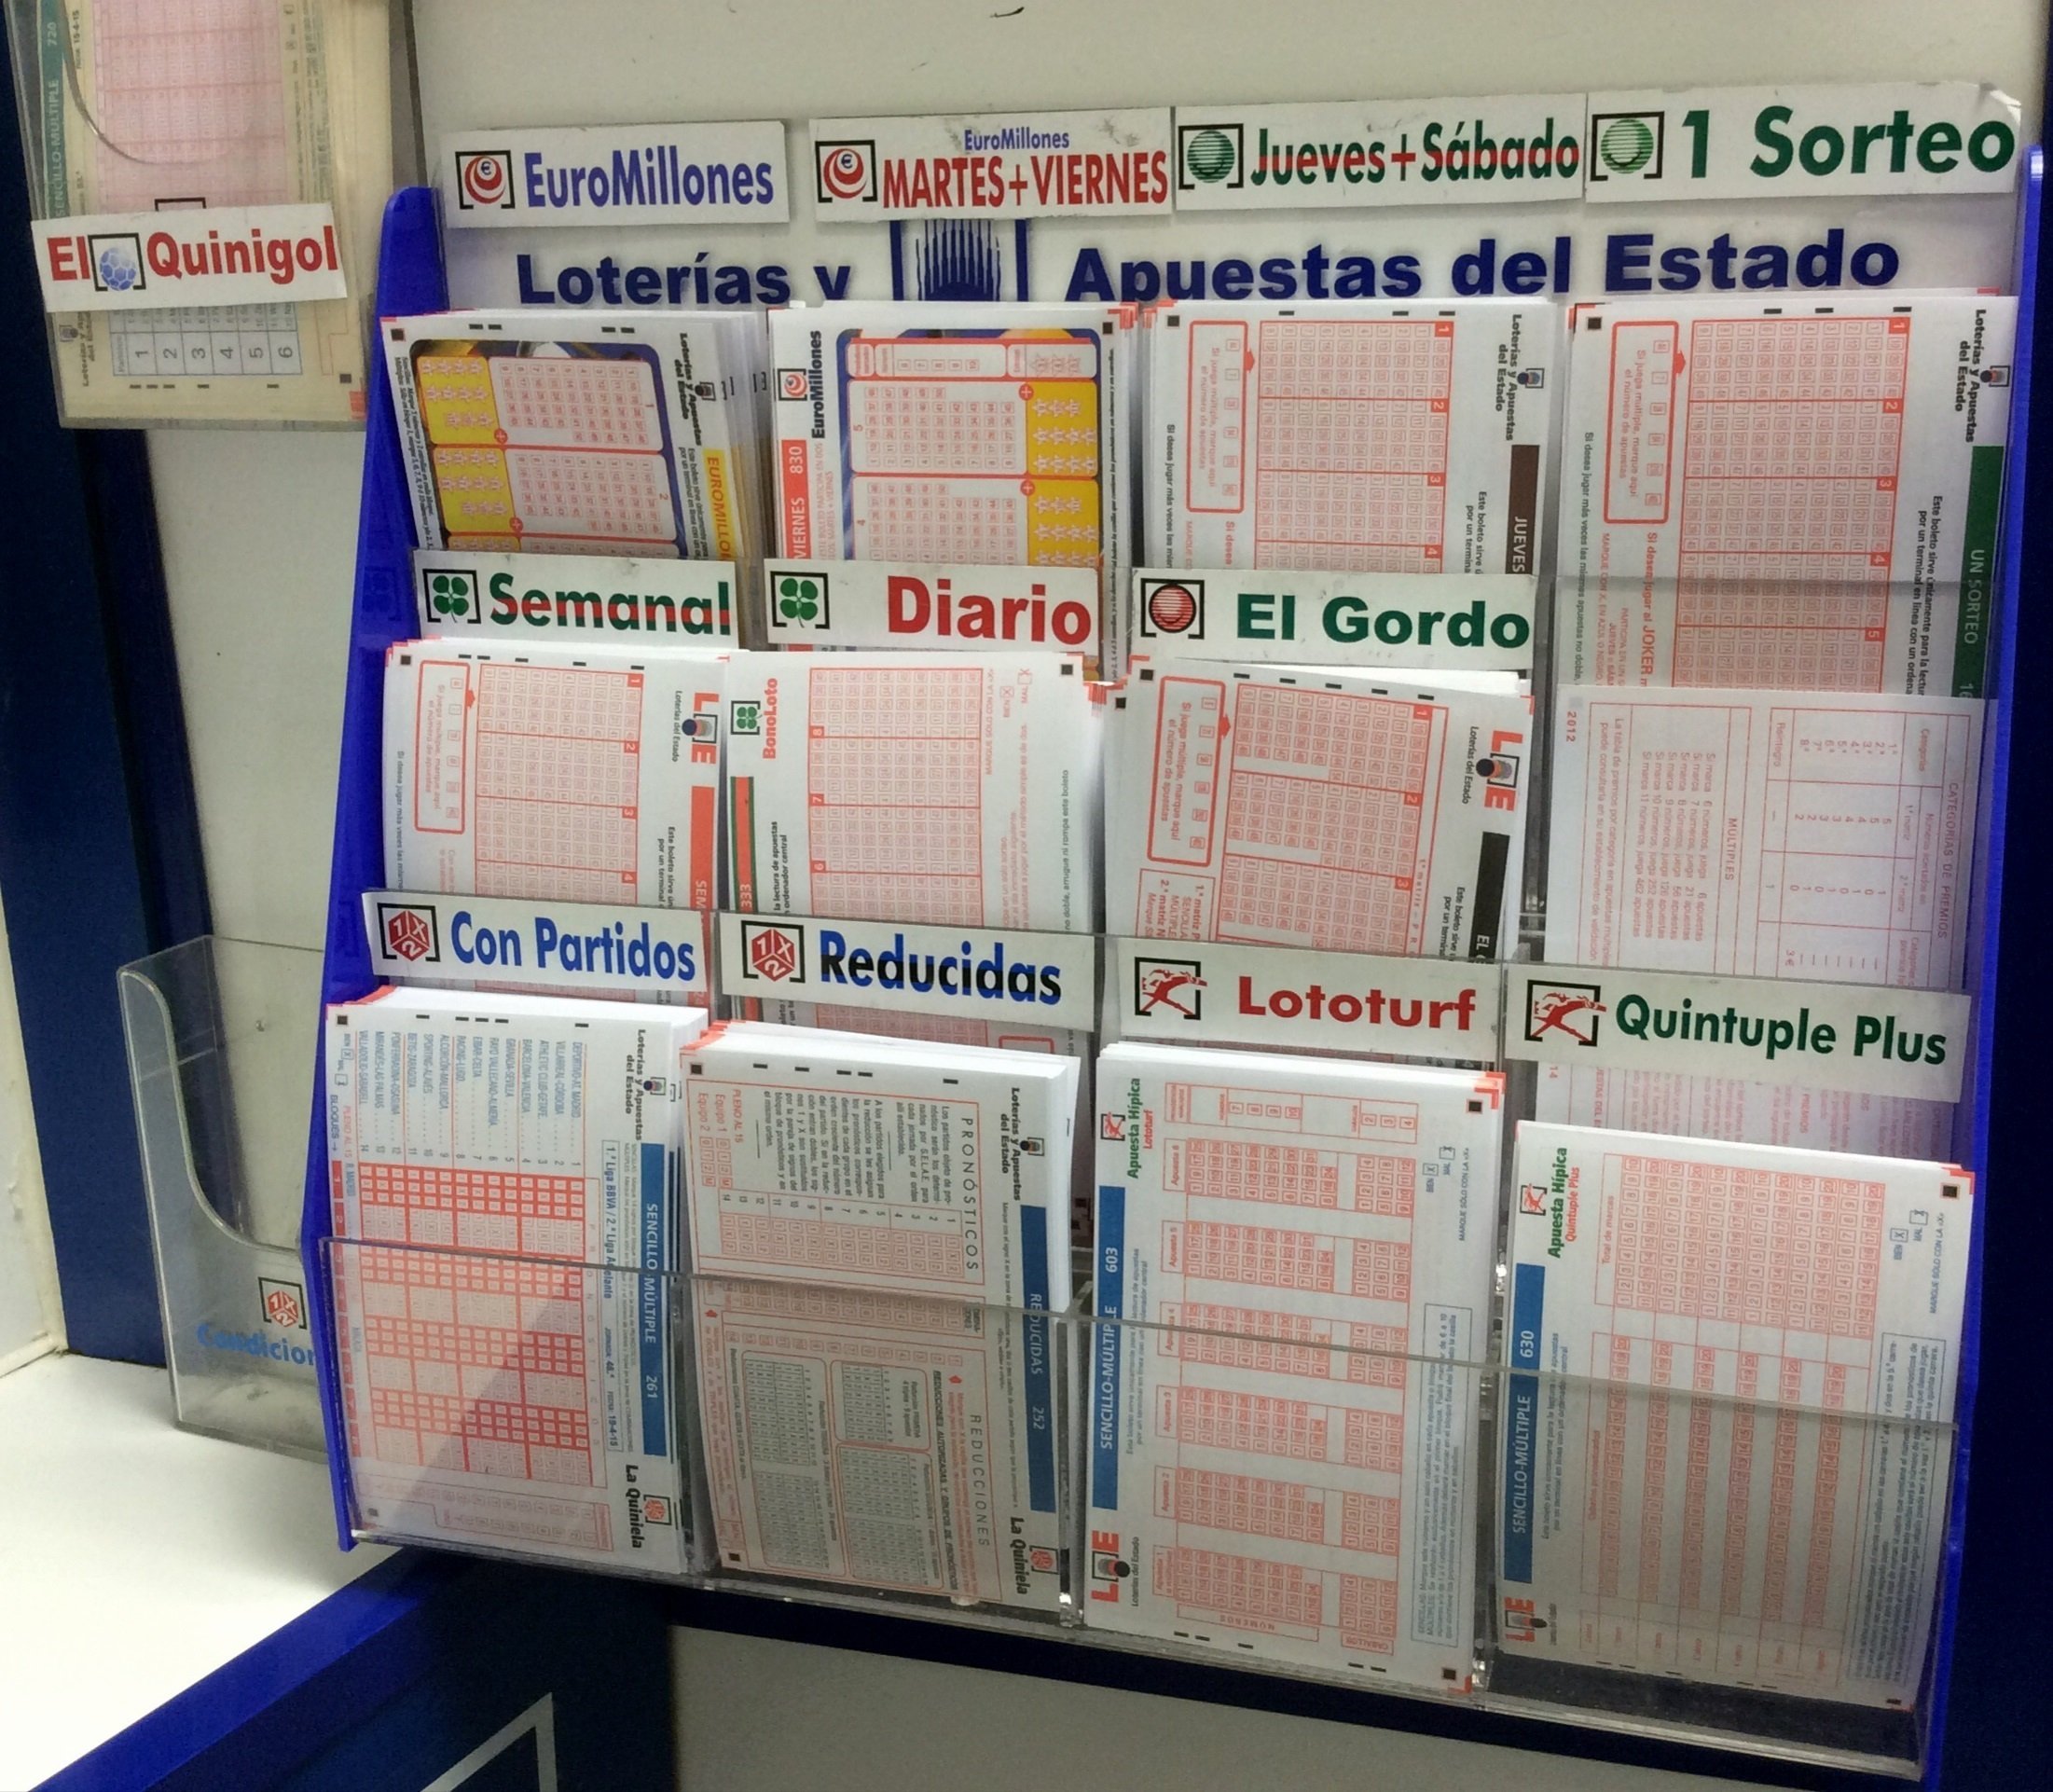 Coronavirus | Aquest és el calendari de retorn de les loteries espanyoles